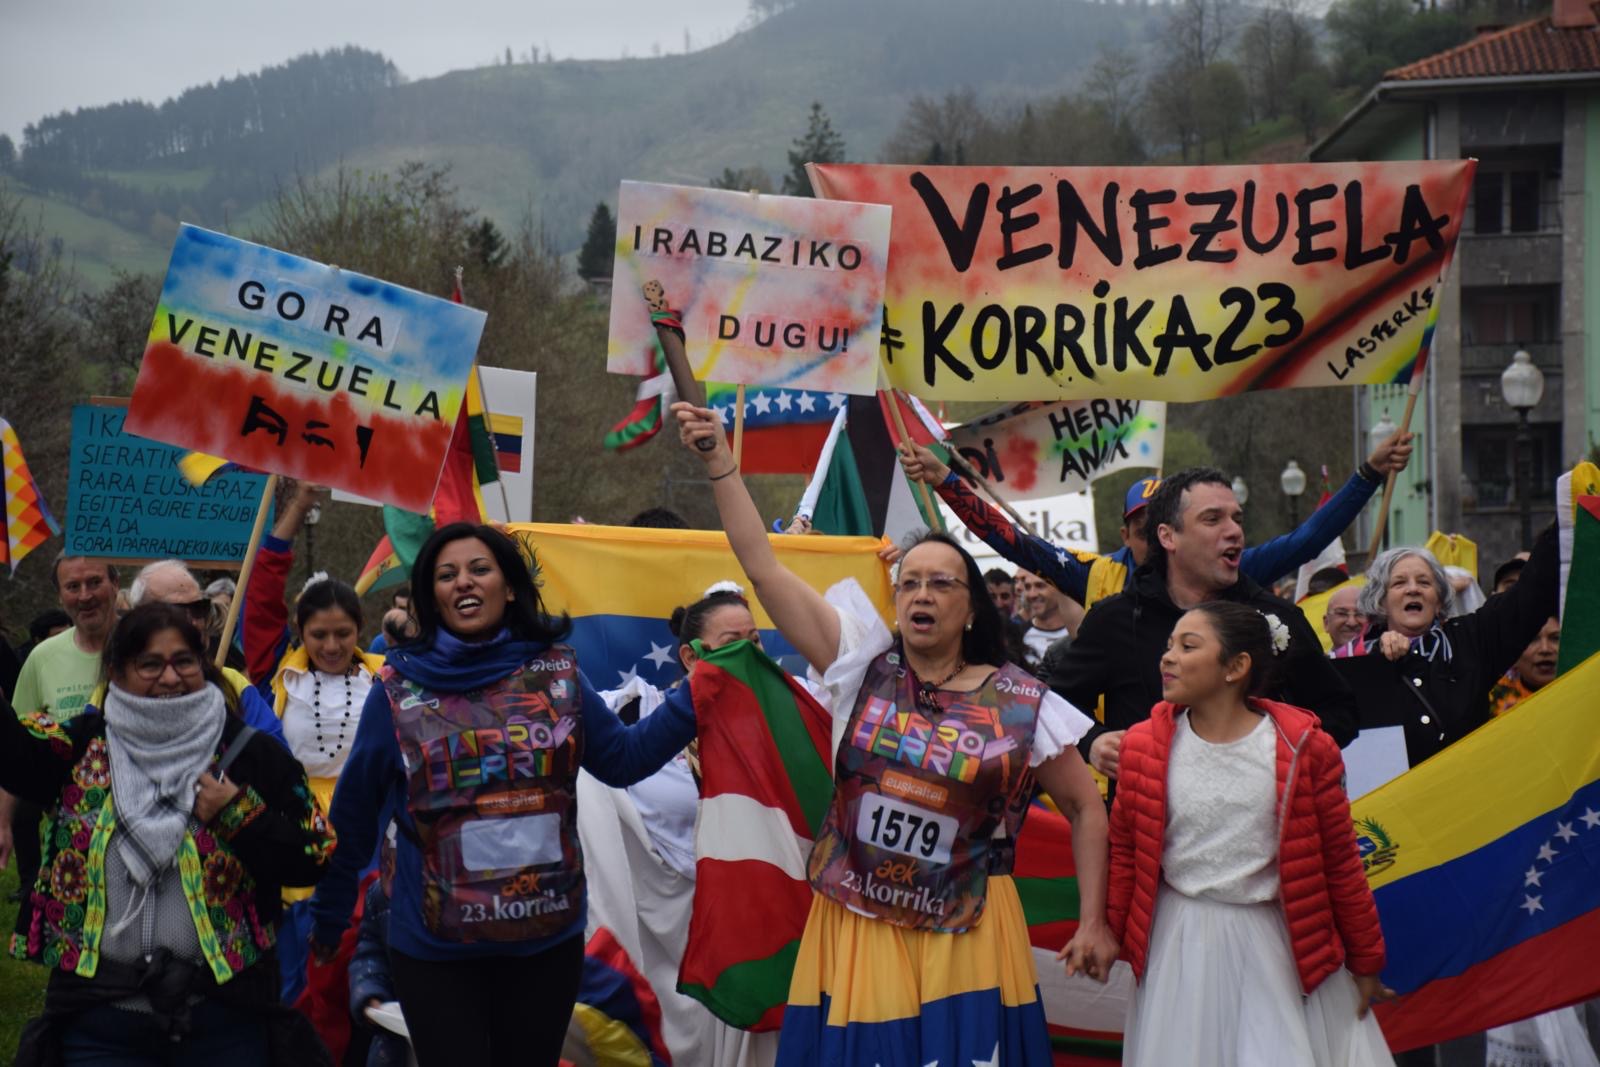 Venezuela participa en la 23ª edición de la Korrika en el País Vasco